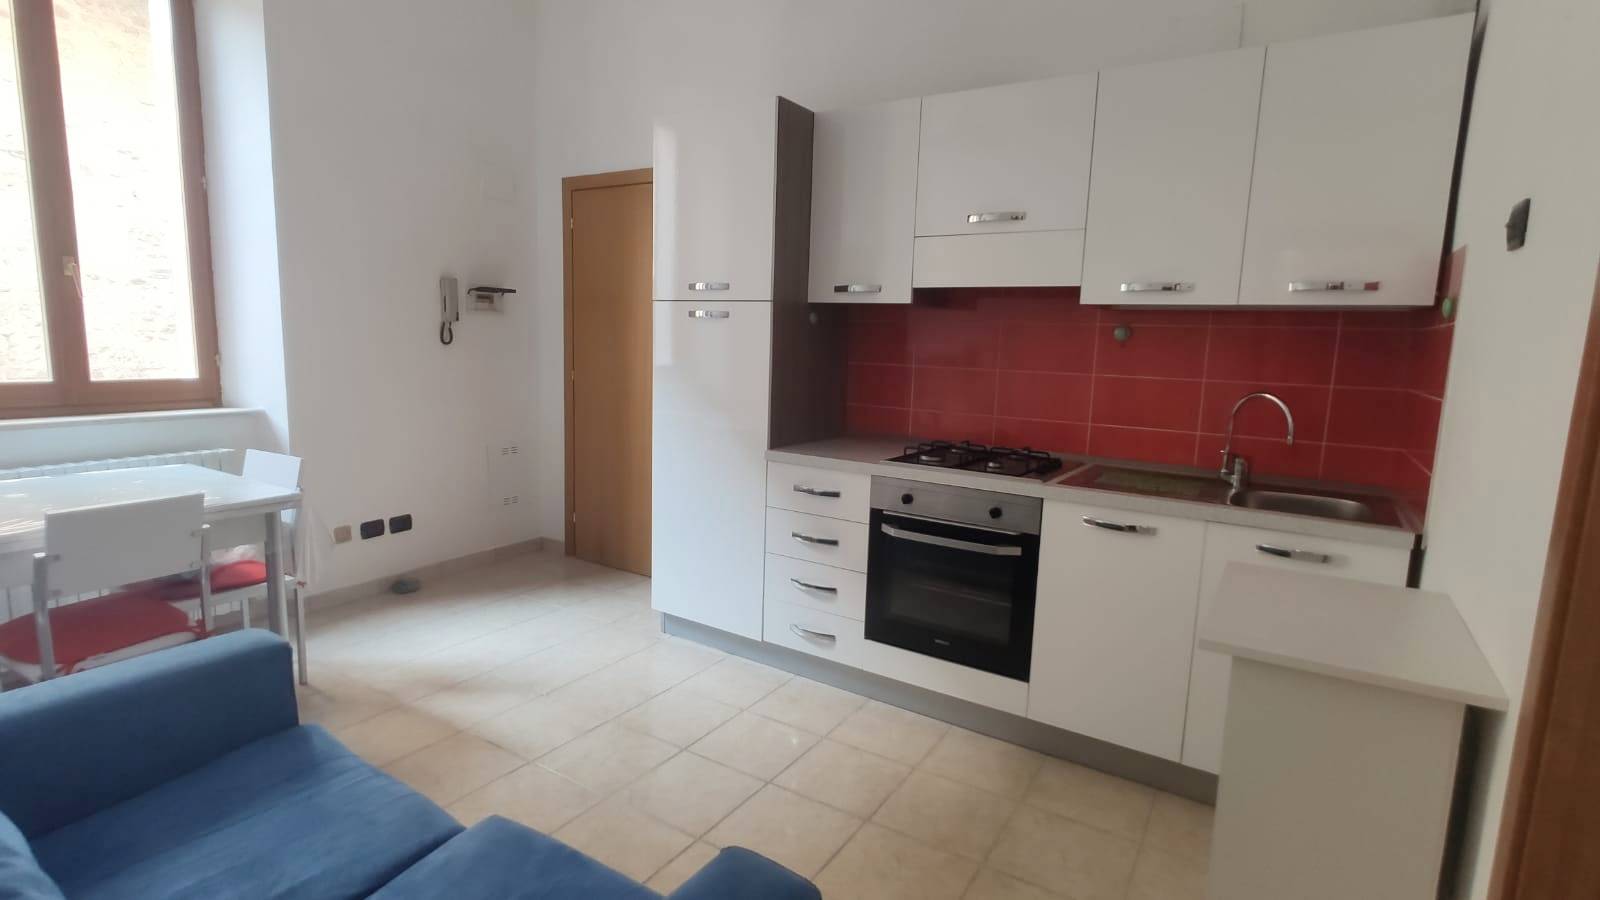 Appartamento in affitto a Ascoli Piceno, 4 locali, zona Località: CentroStorico, prezzo € 500 | PortaleAgenzieImmobiliari.it